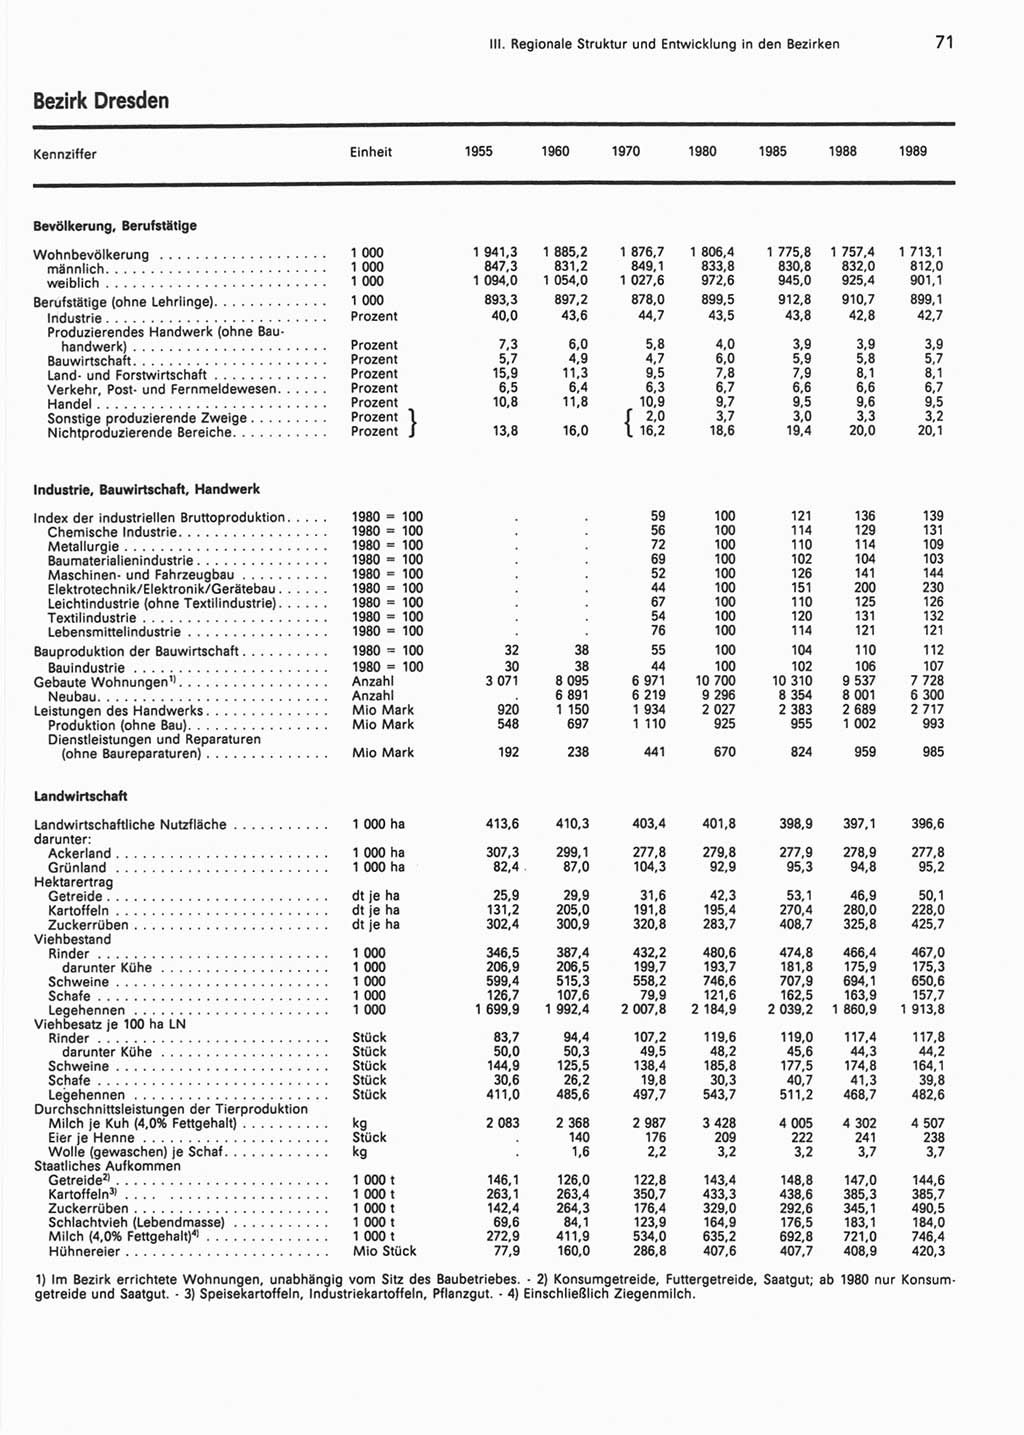 Statistisches Jahrbuch der Deutschen Demokratischen Republik (DDR) 1990, Seite 71 (Stat. Jb. DDR 1990, S. 71)